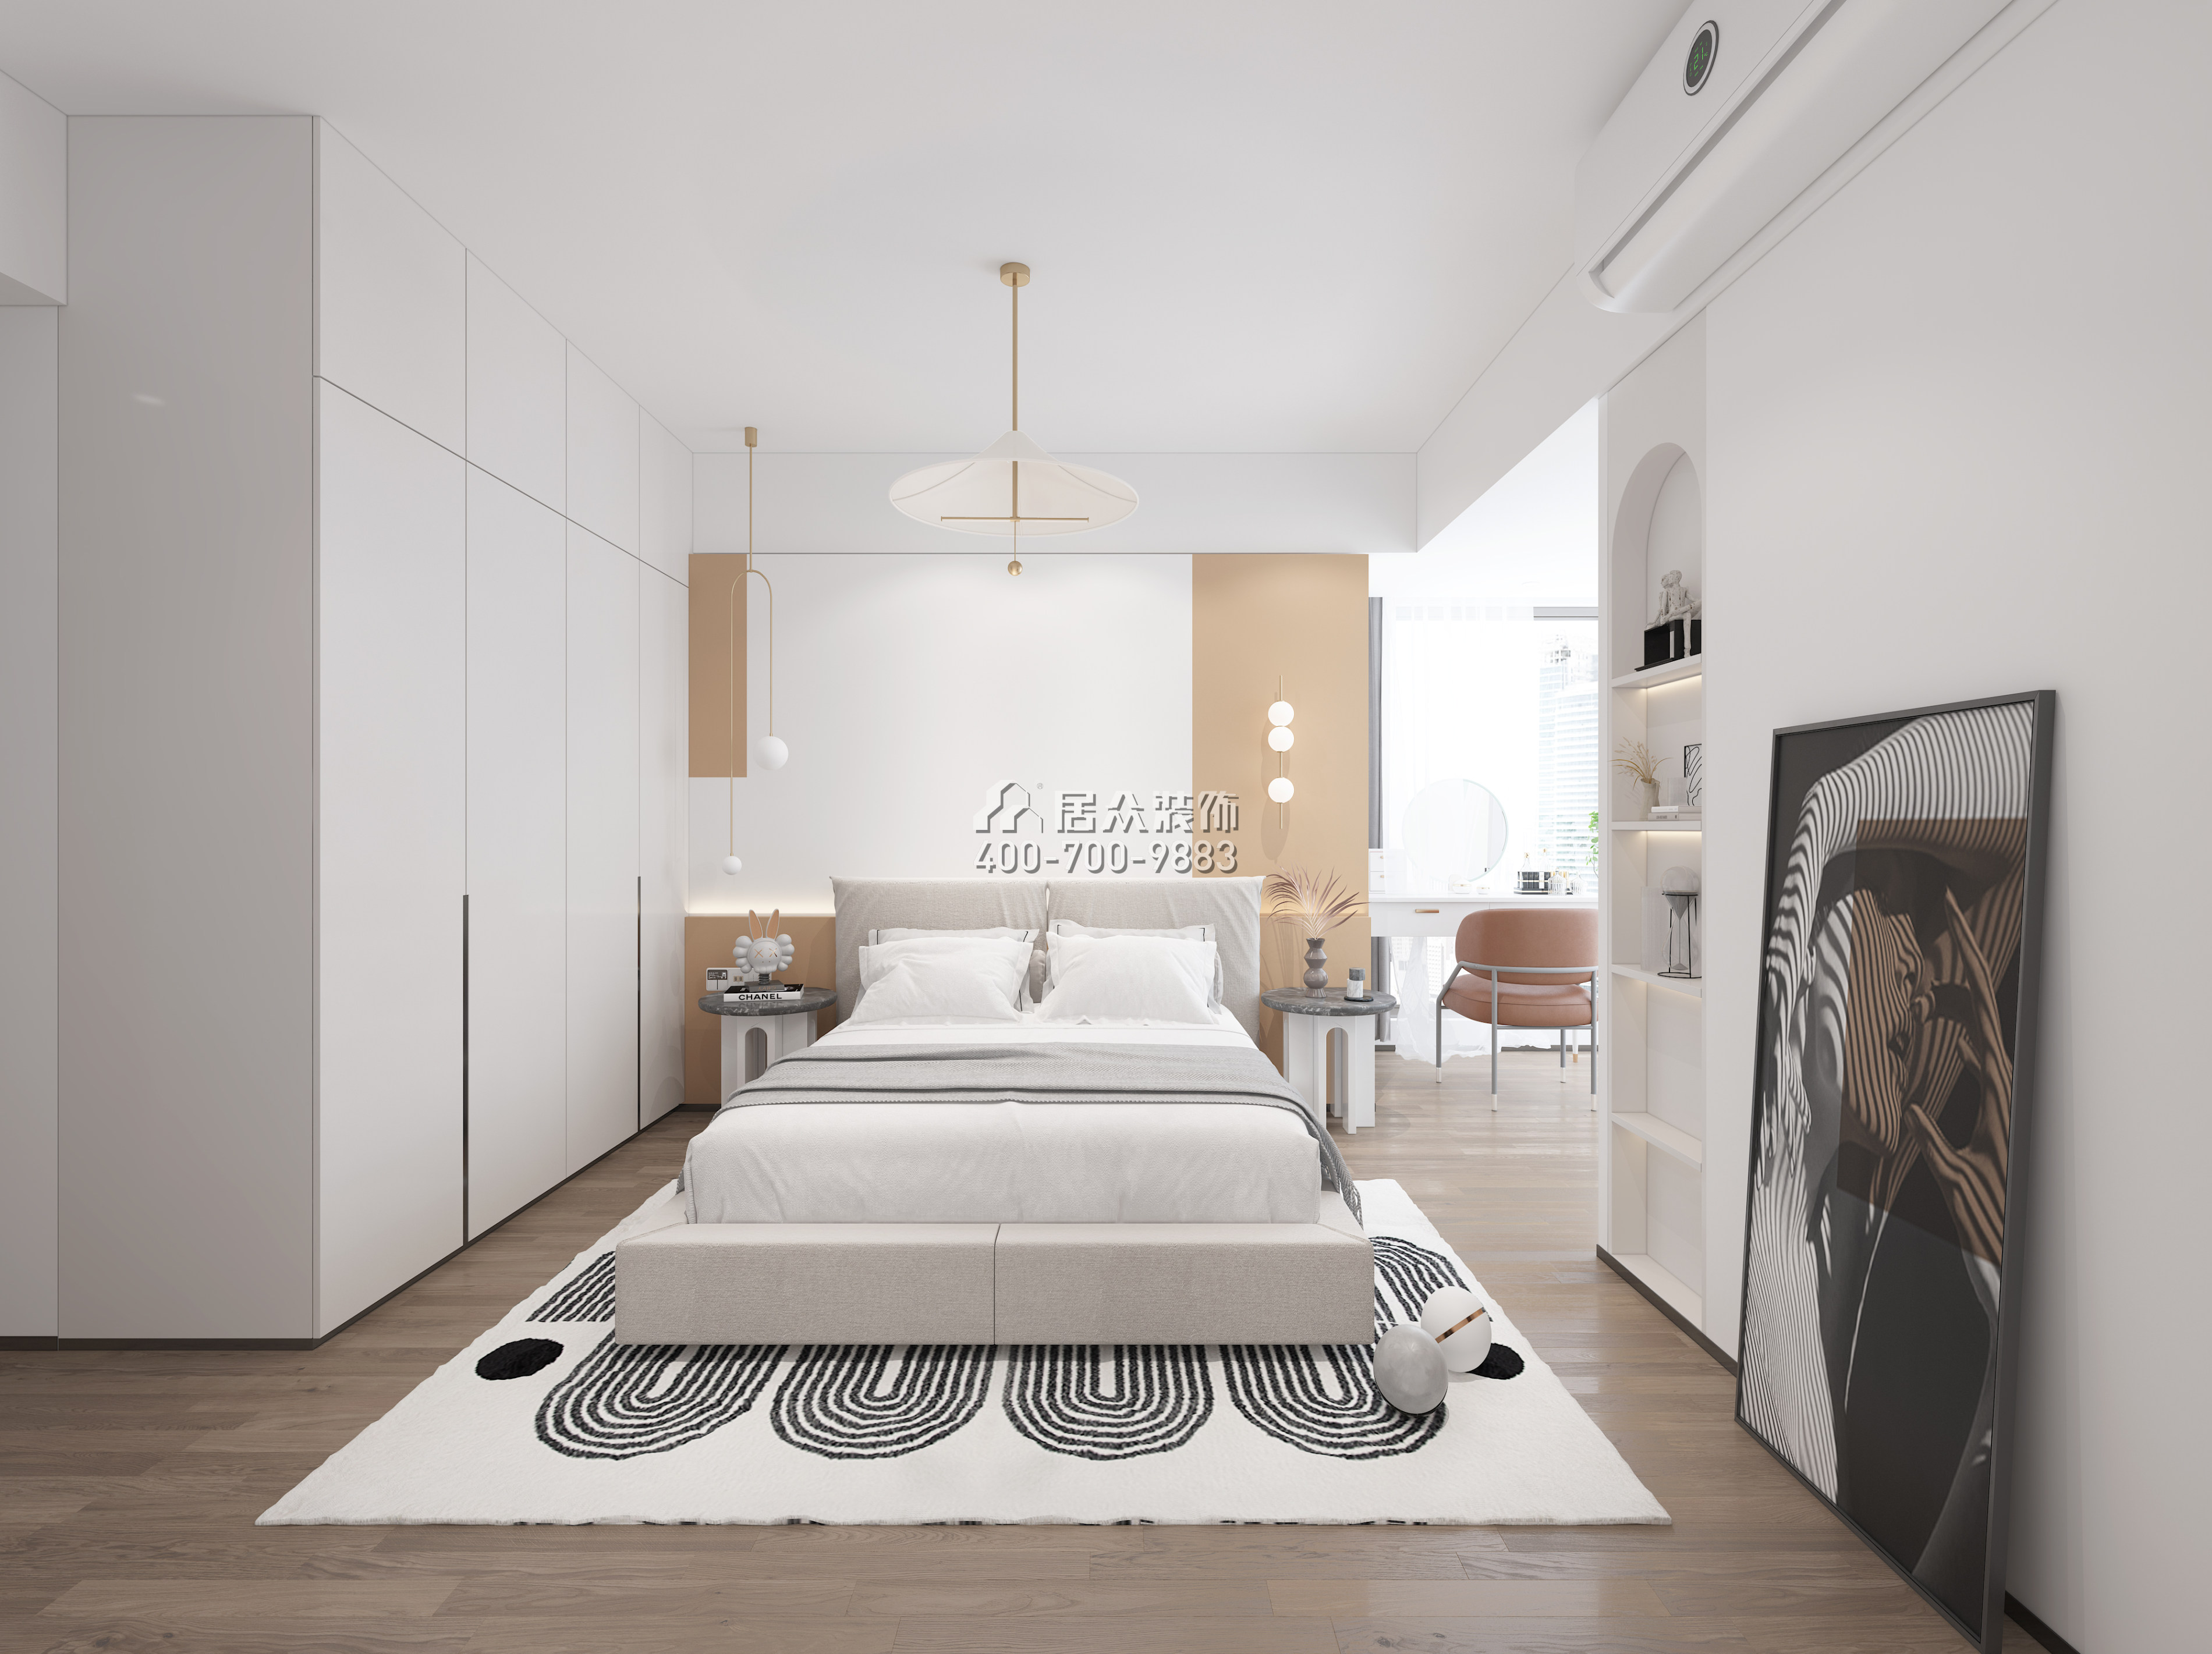 南海玫瑰园110平方米现代简约风格平层户型卧室装修效果图